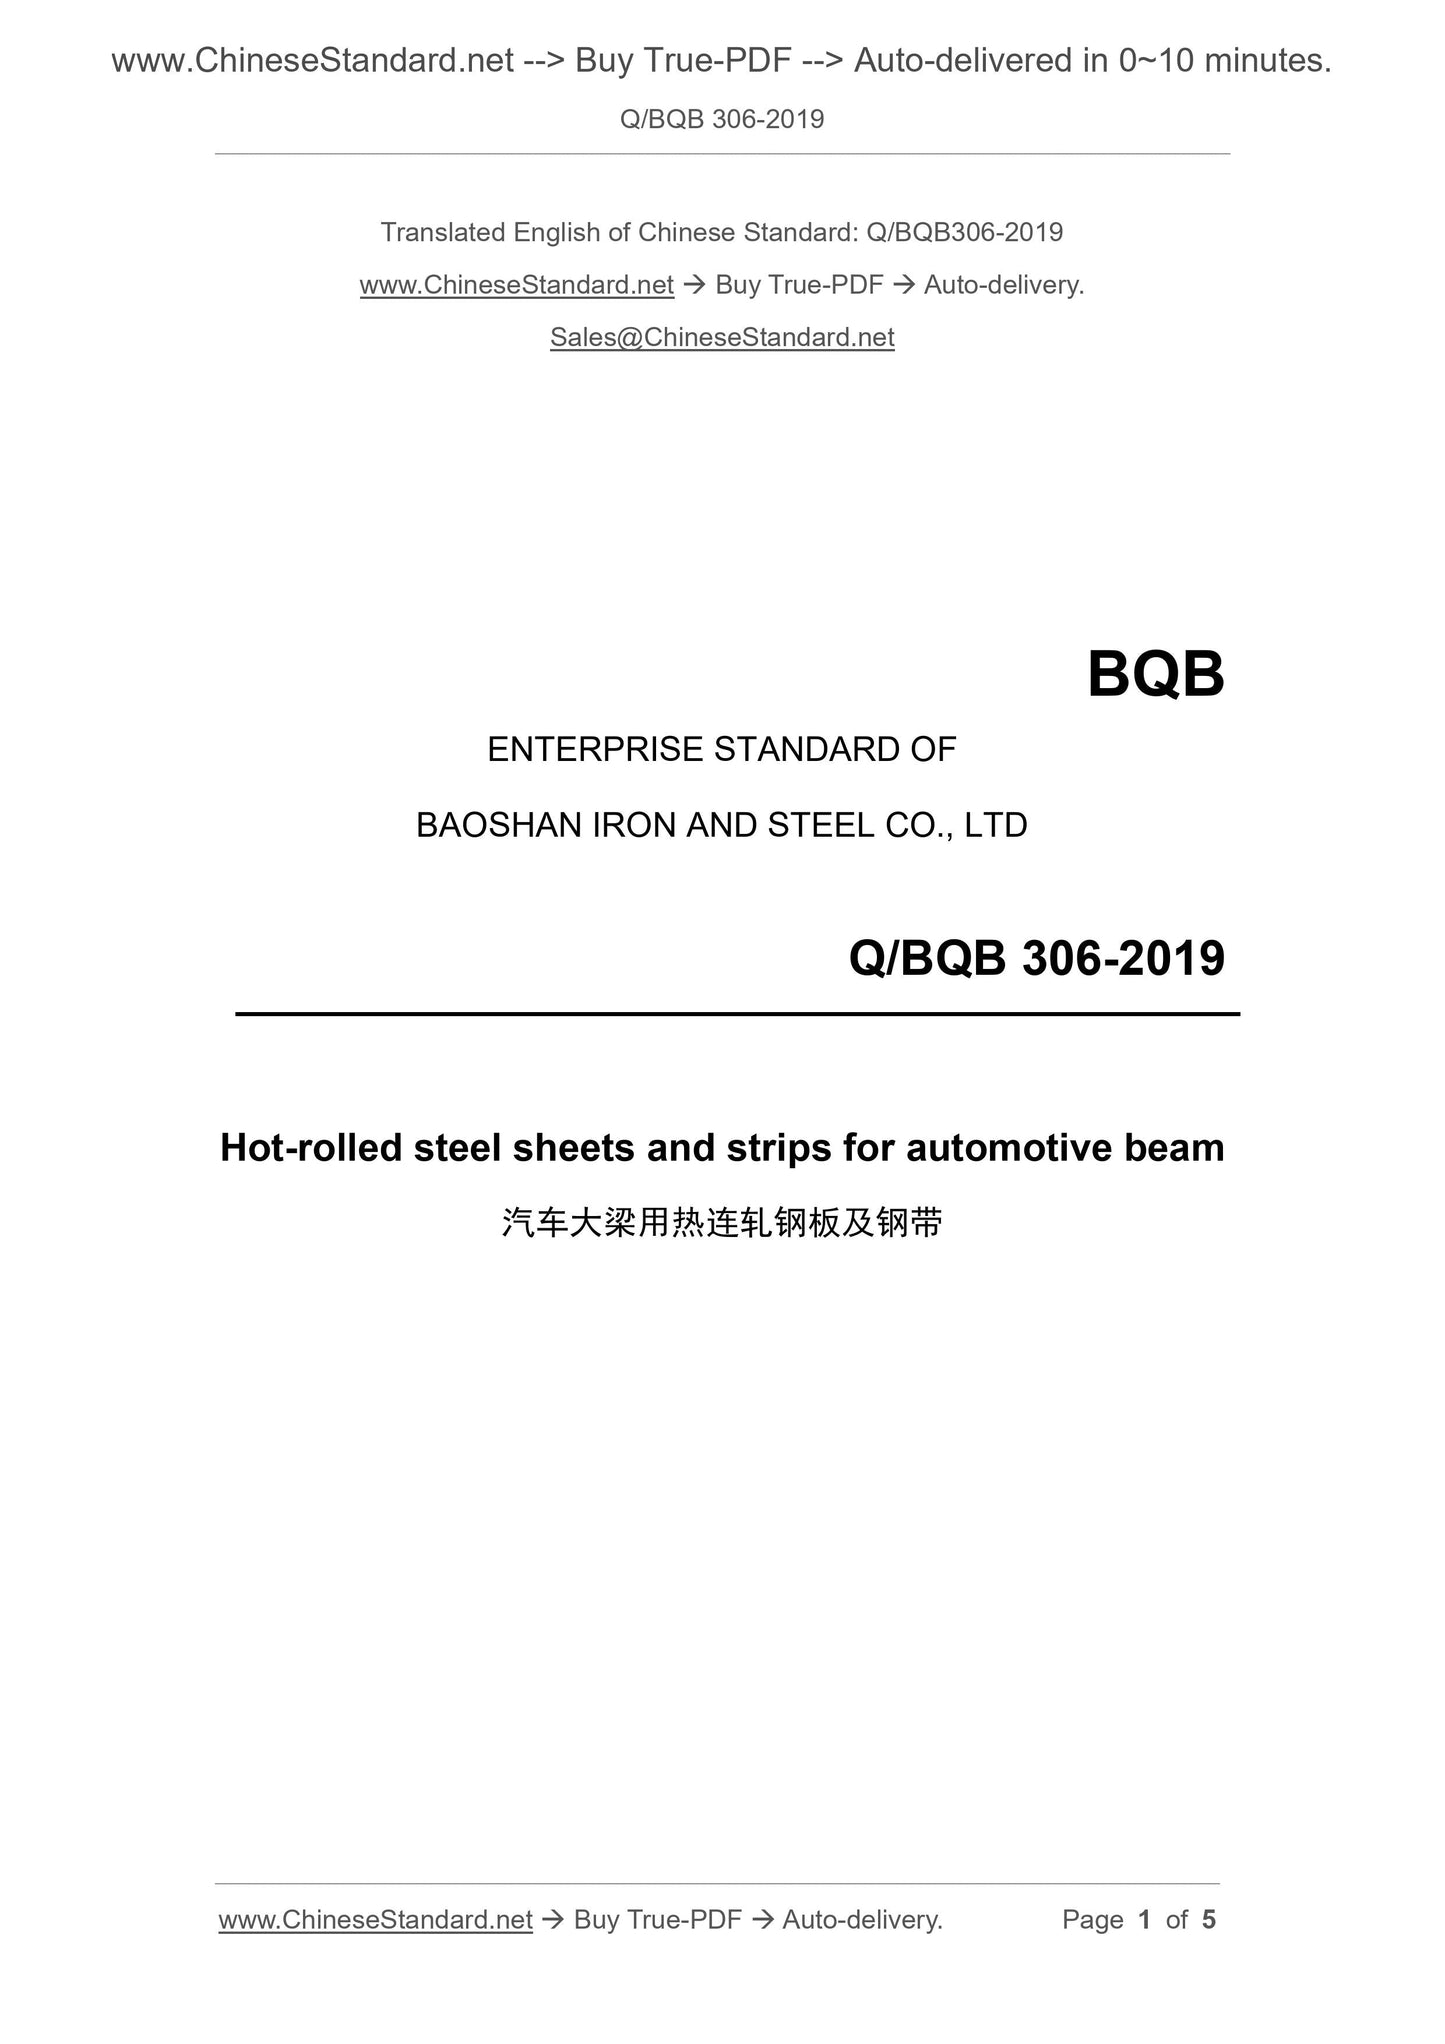 Q/BQB 306-2019 Page 1